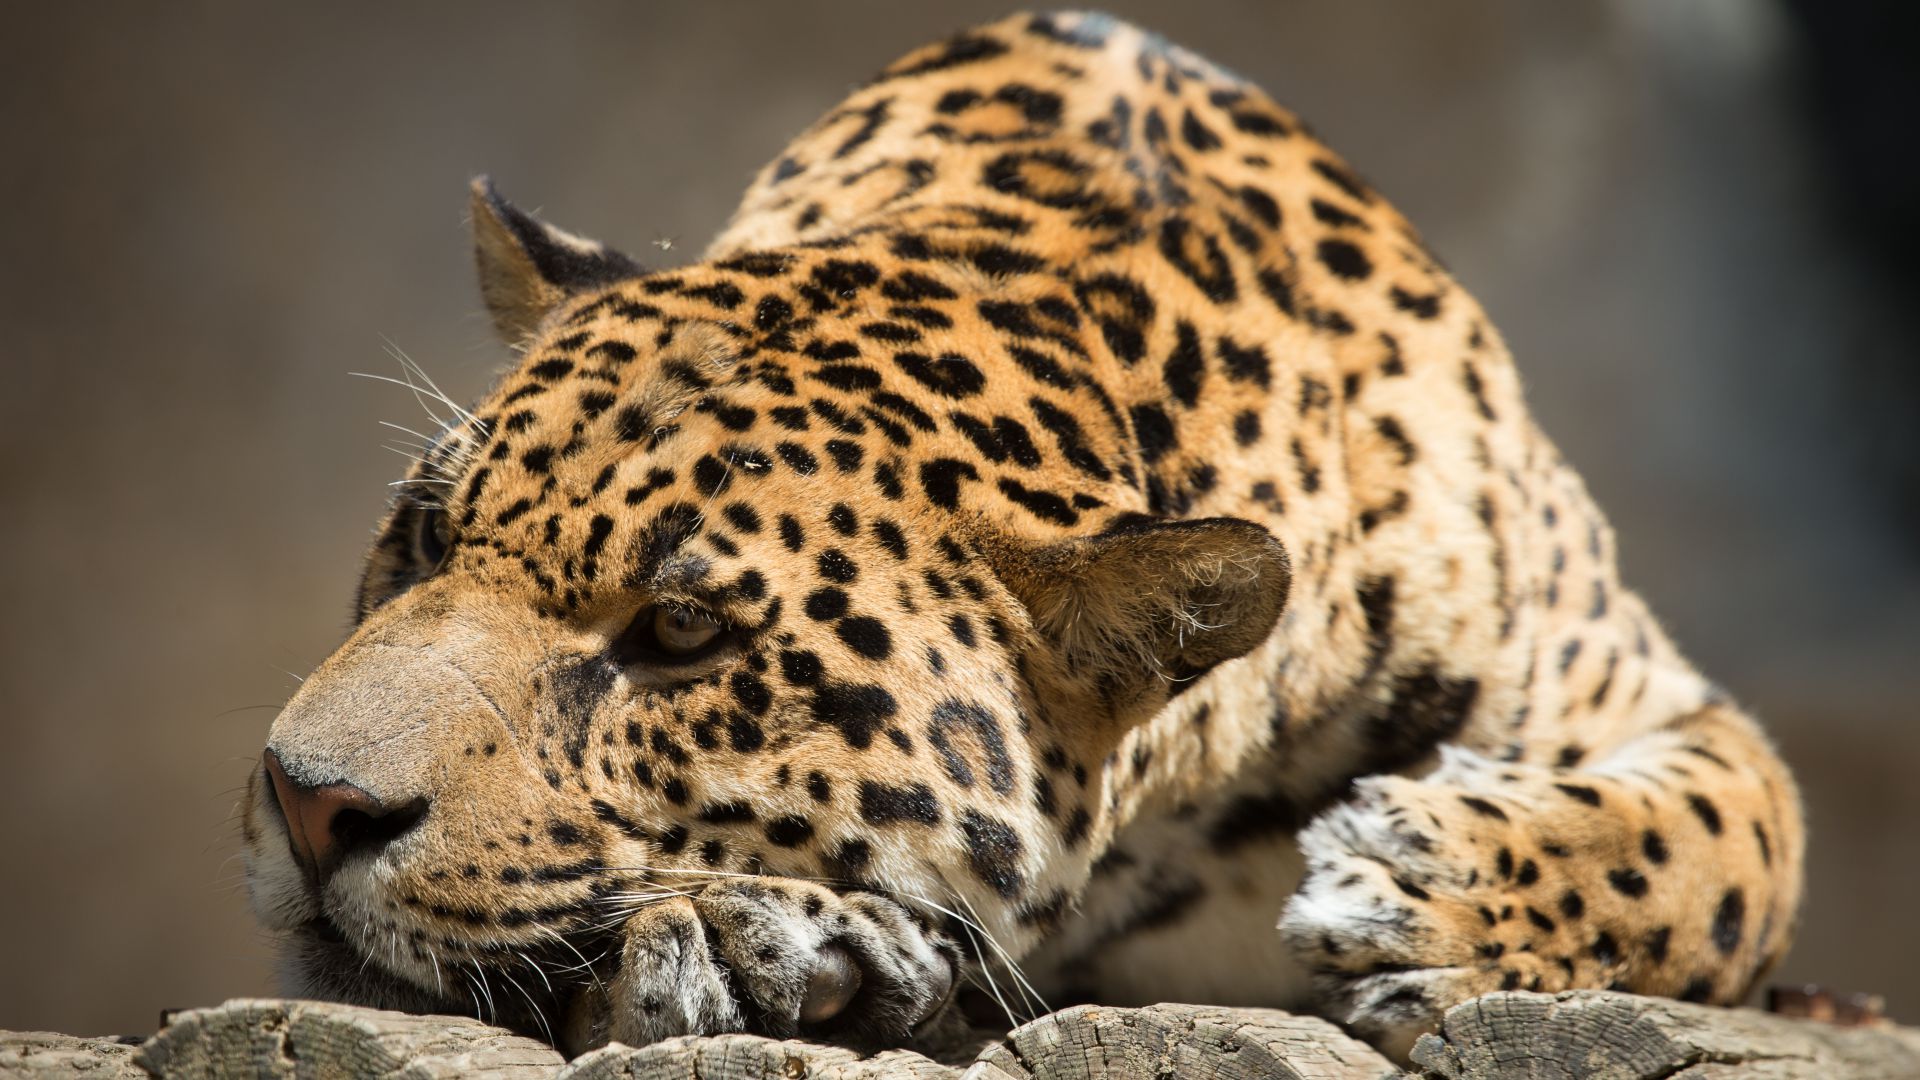 ягуар, взгляд, милые животные, jaguar, look, cute animals (horizontal)